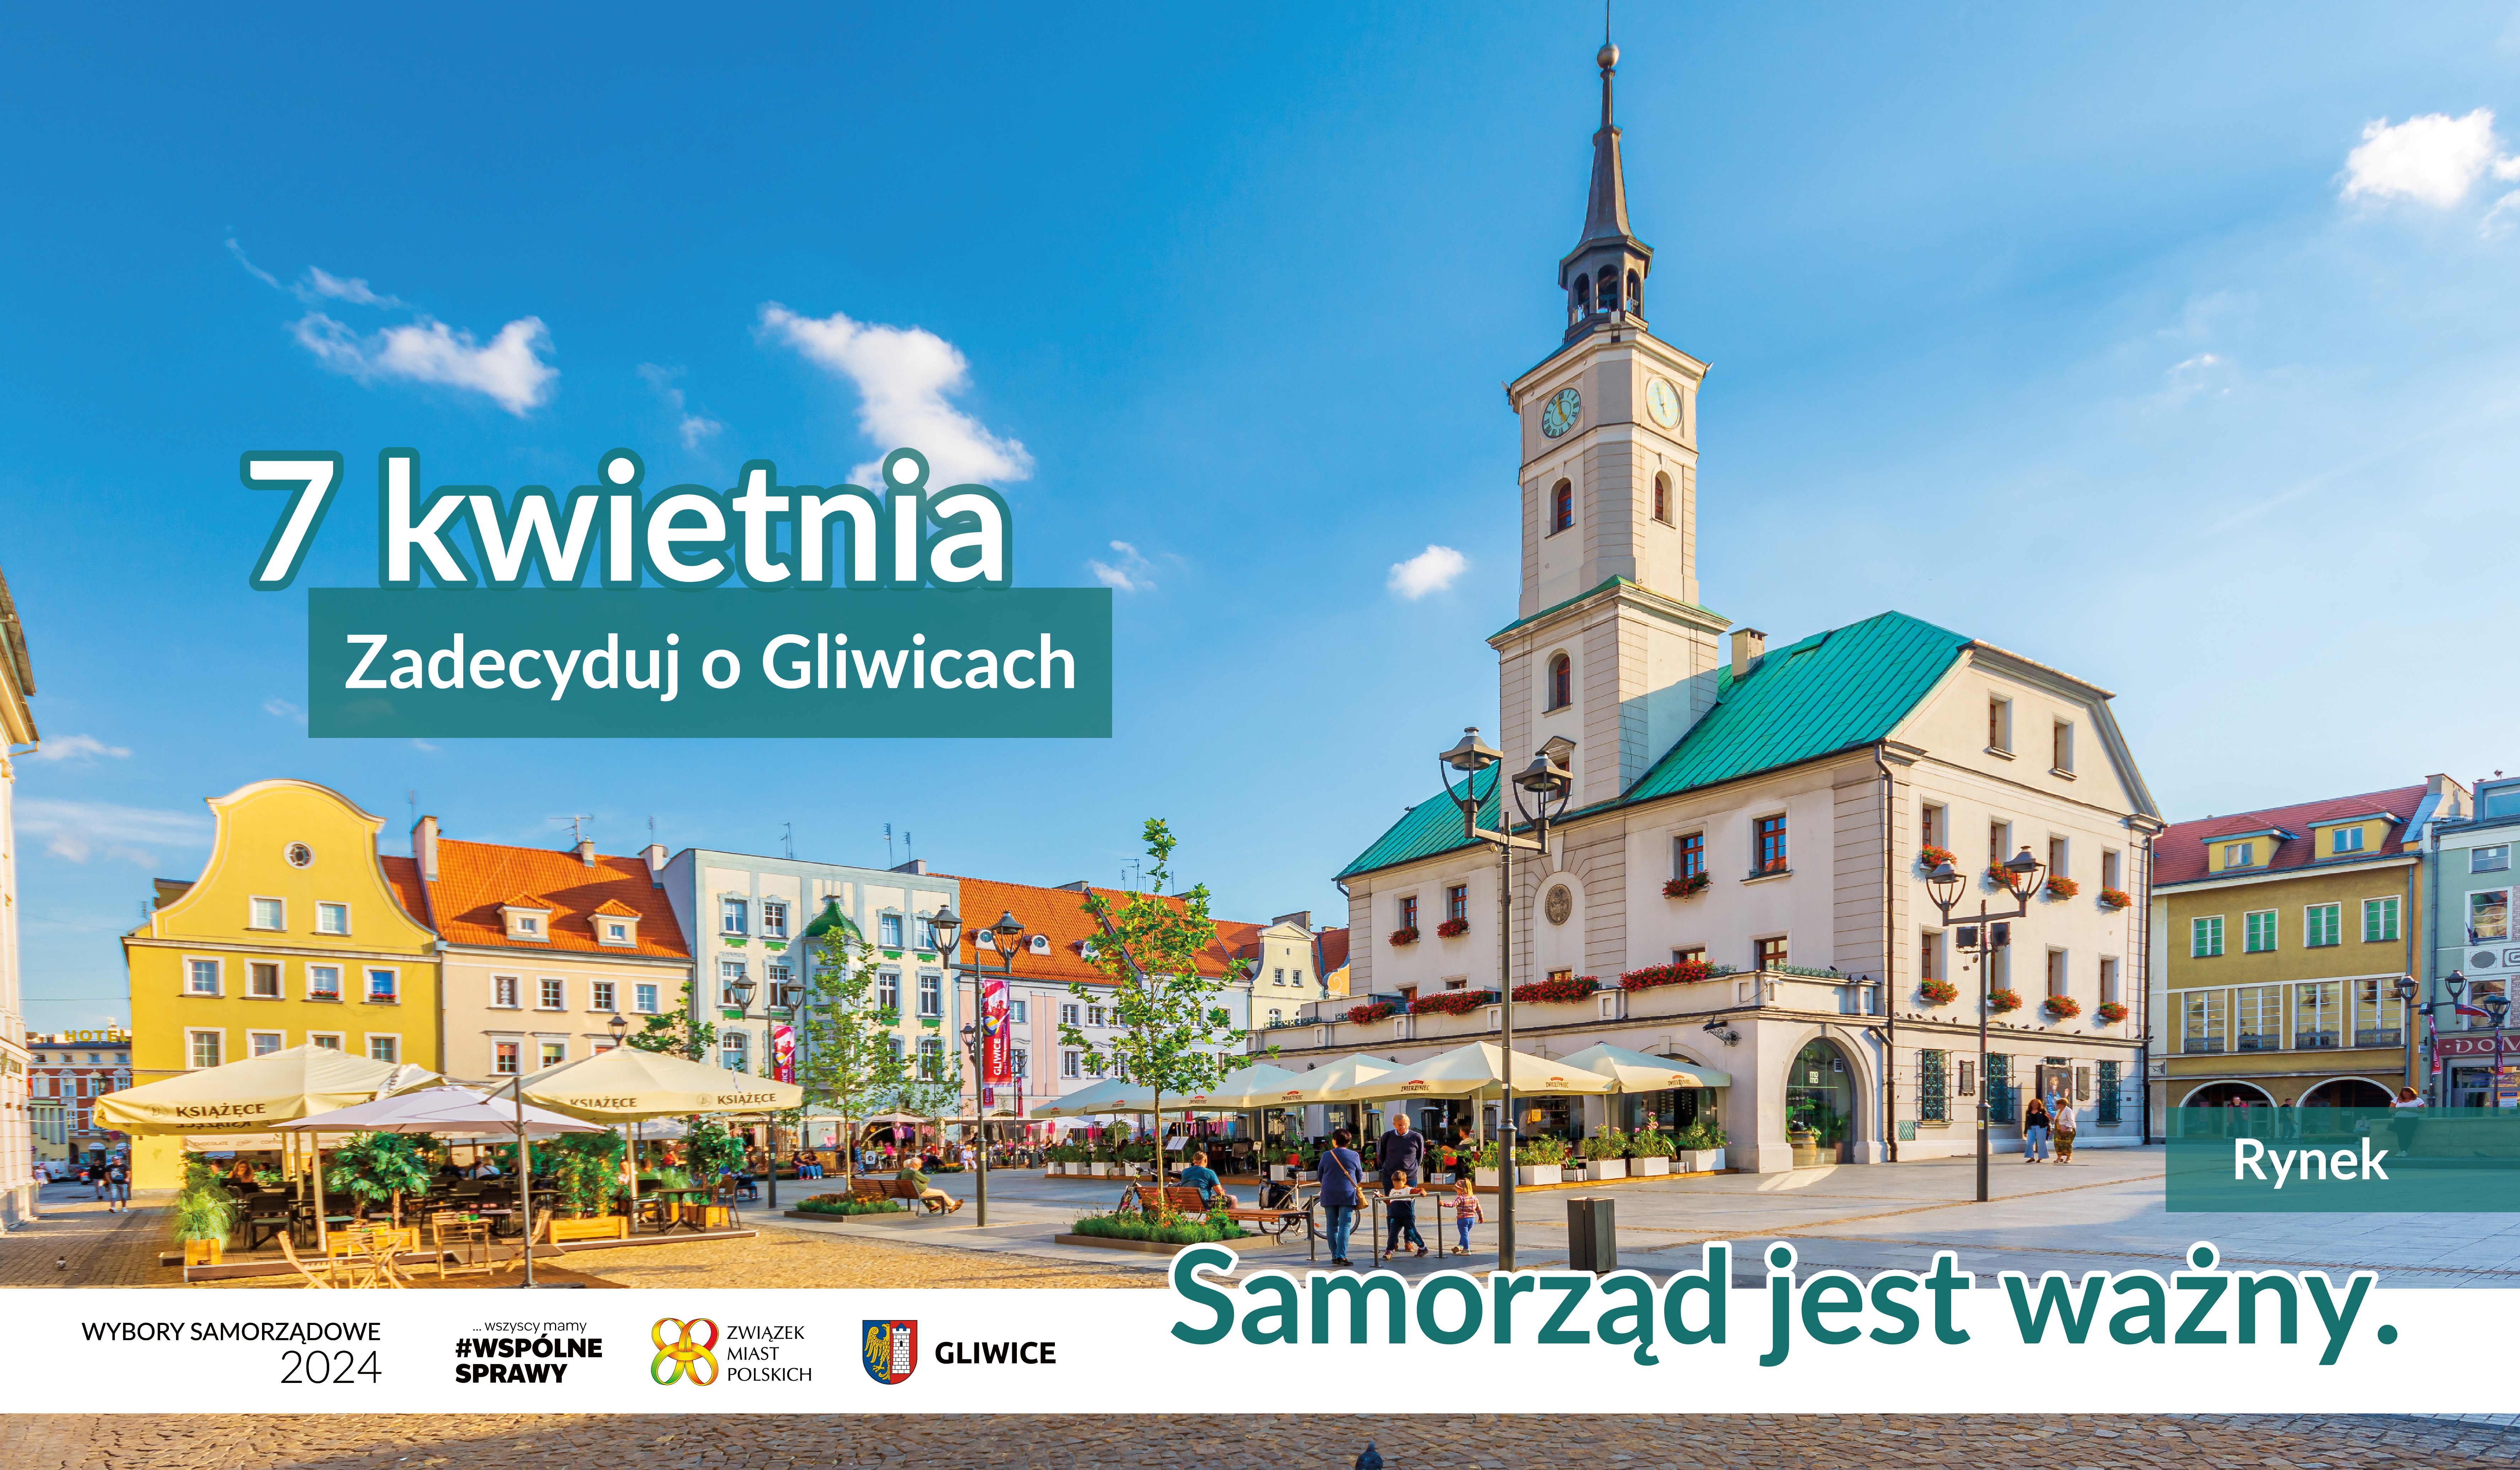 Baner ze zdjęciem Rynku i napisem 7 kwietnia zadecyduj o Gliwicach